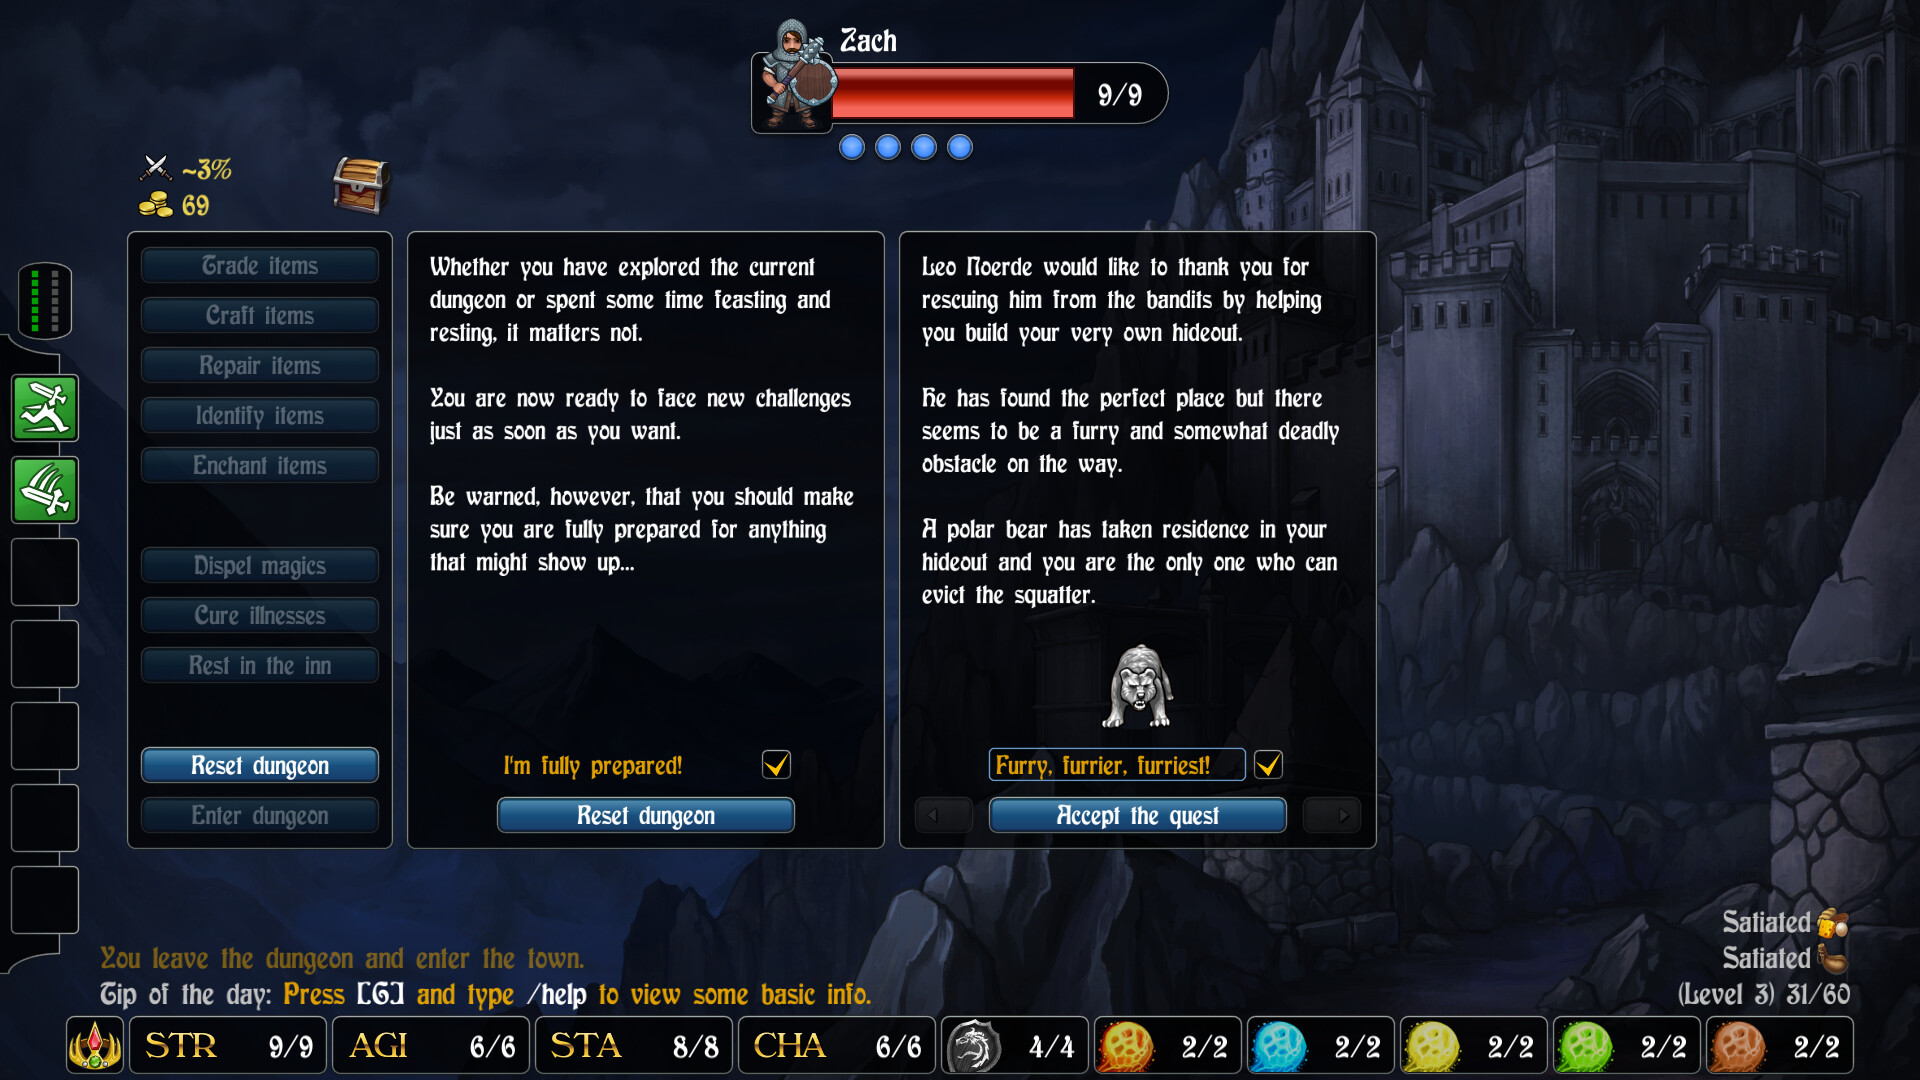 Rogue's Tale - Hideout DLC Featured Screenshot #1